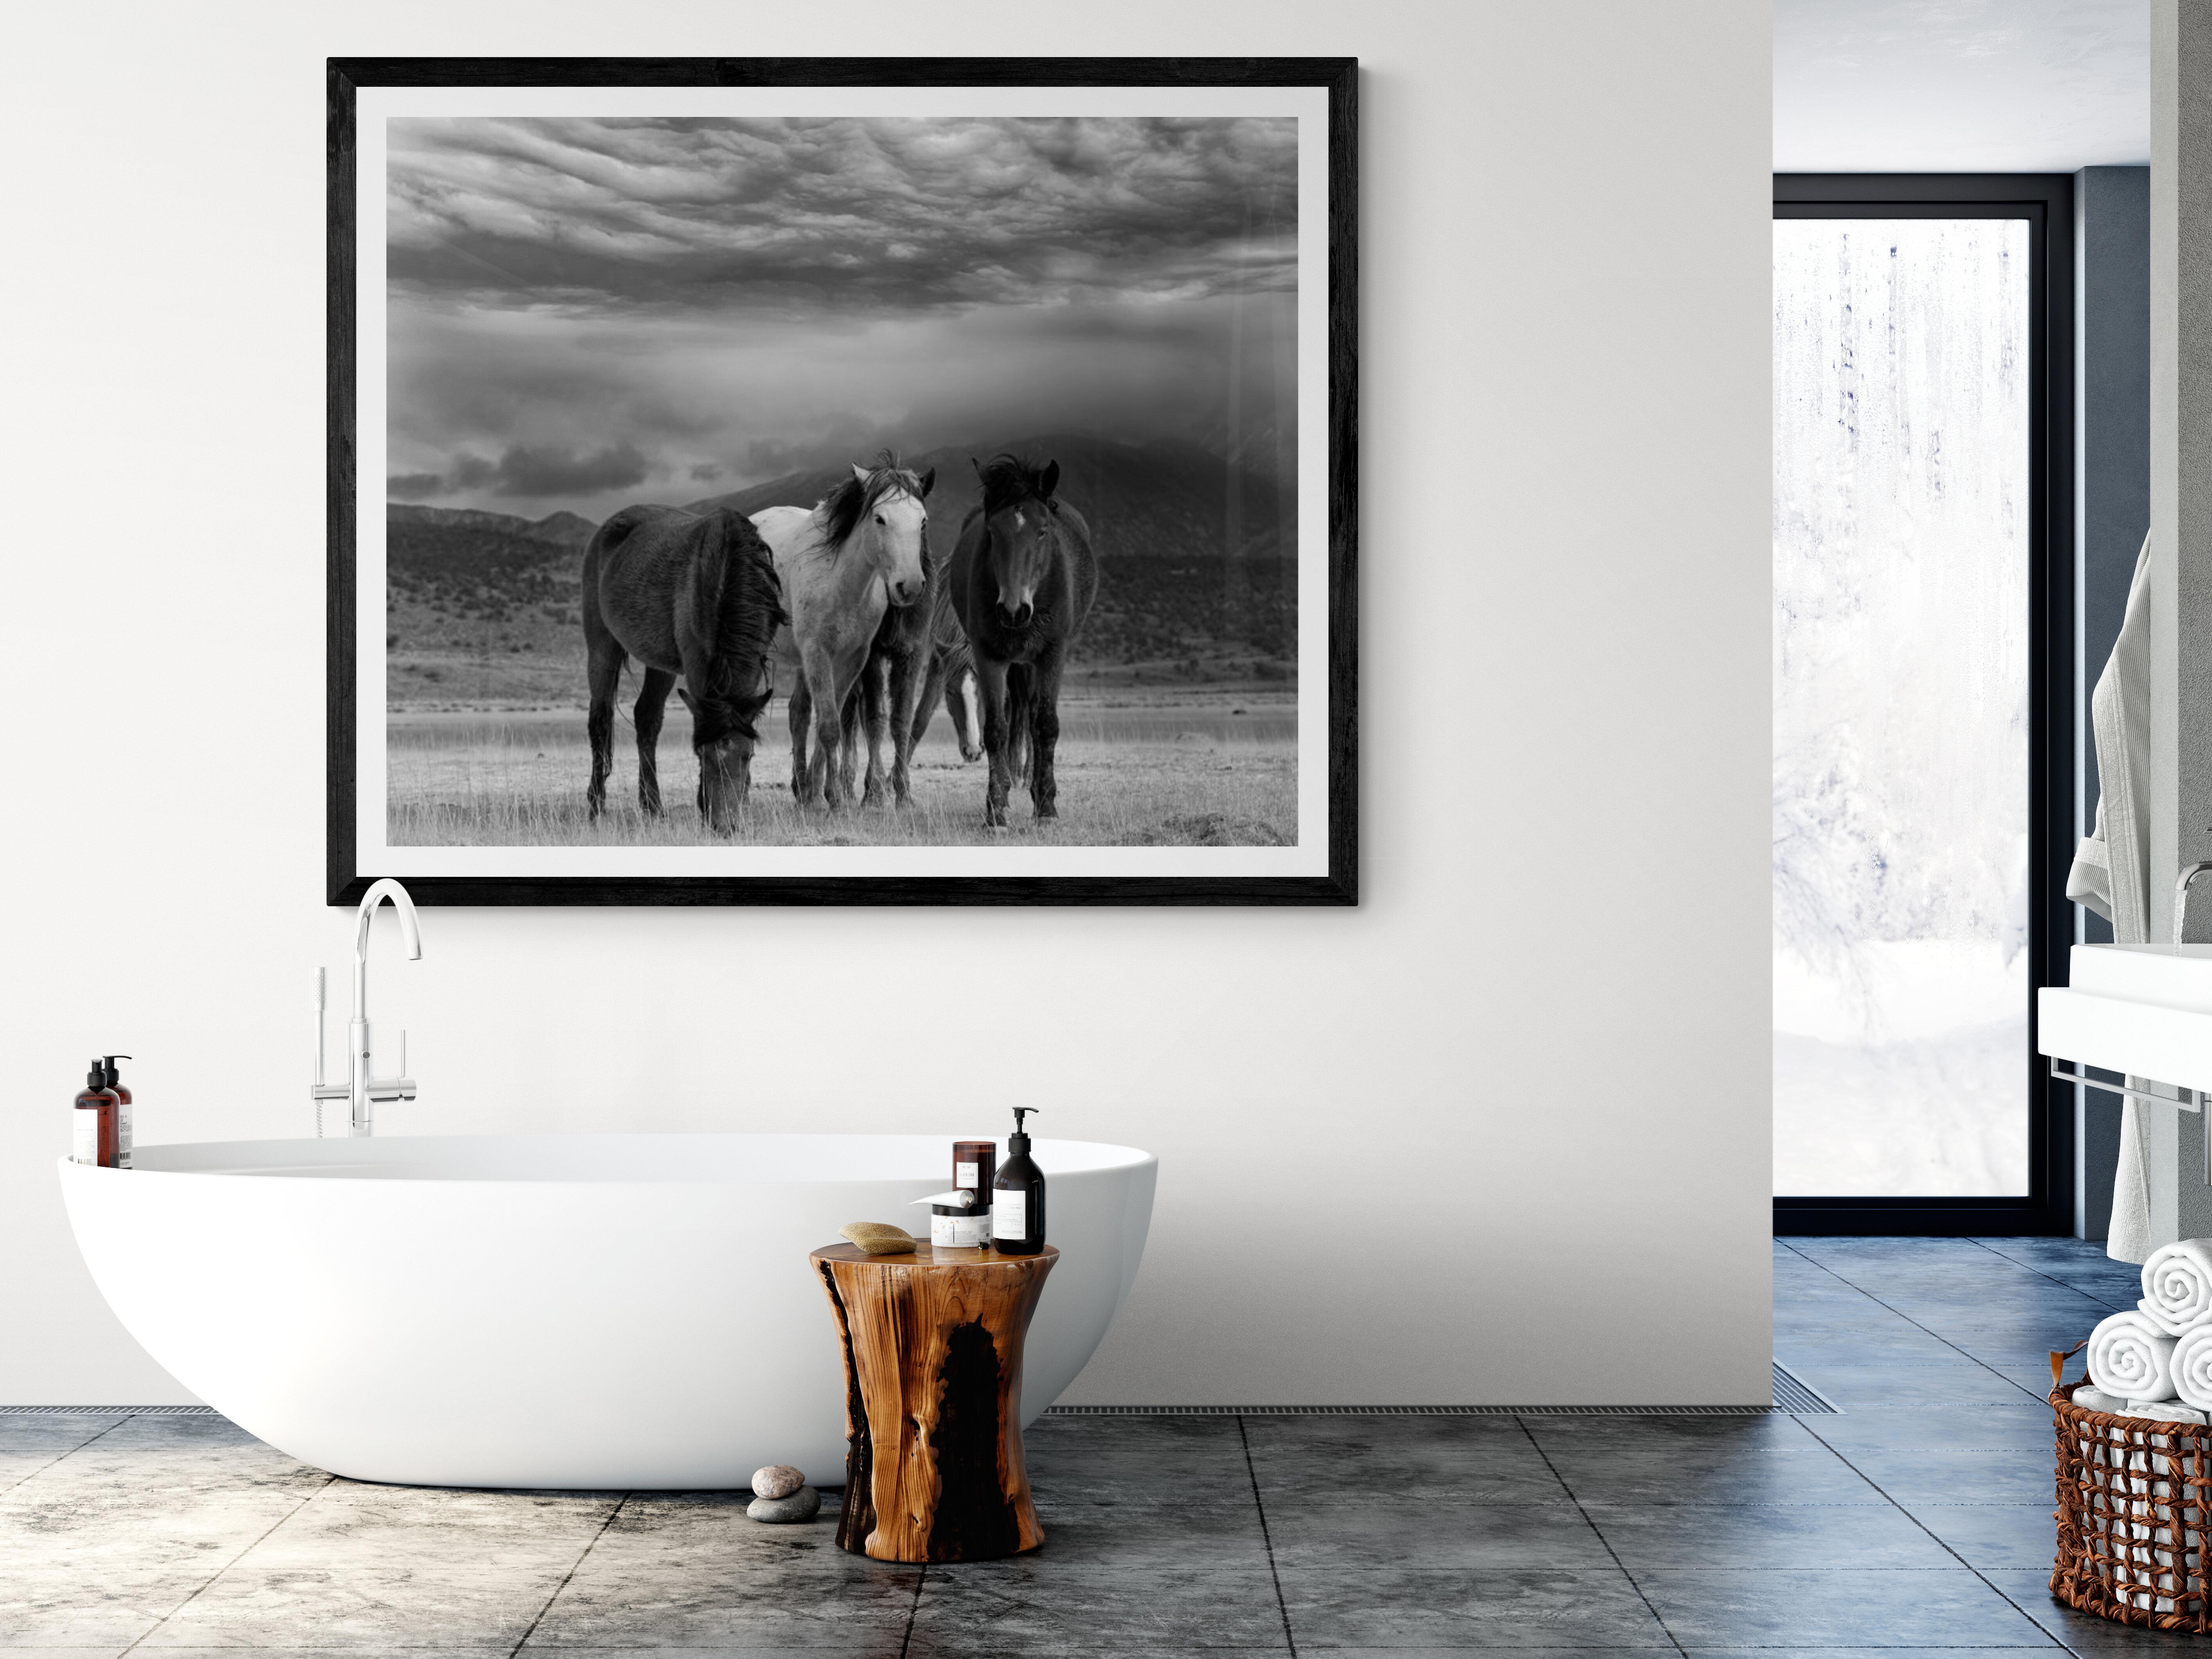 Il s'agit d'une photographie contemporaine en noir et blanc de chevaux sauvages d'Amérique du Nord.
Photographie par Shane Russeck
Imprimé sur du papier photographique d'archivage 
Edition de 10 
Signé et numéroté par l'artiste.
Encadrement